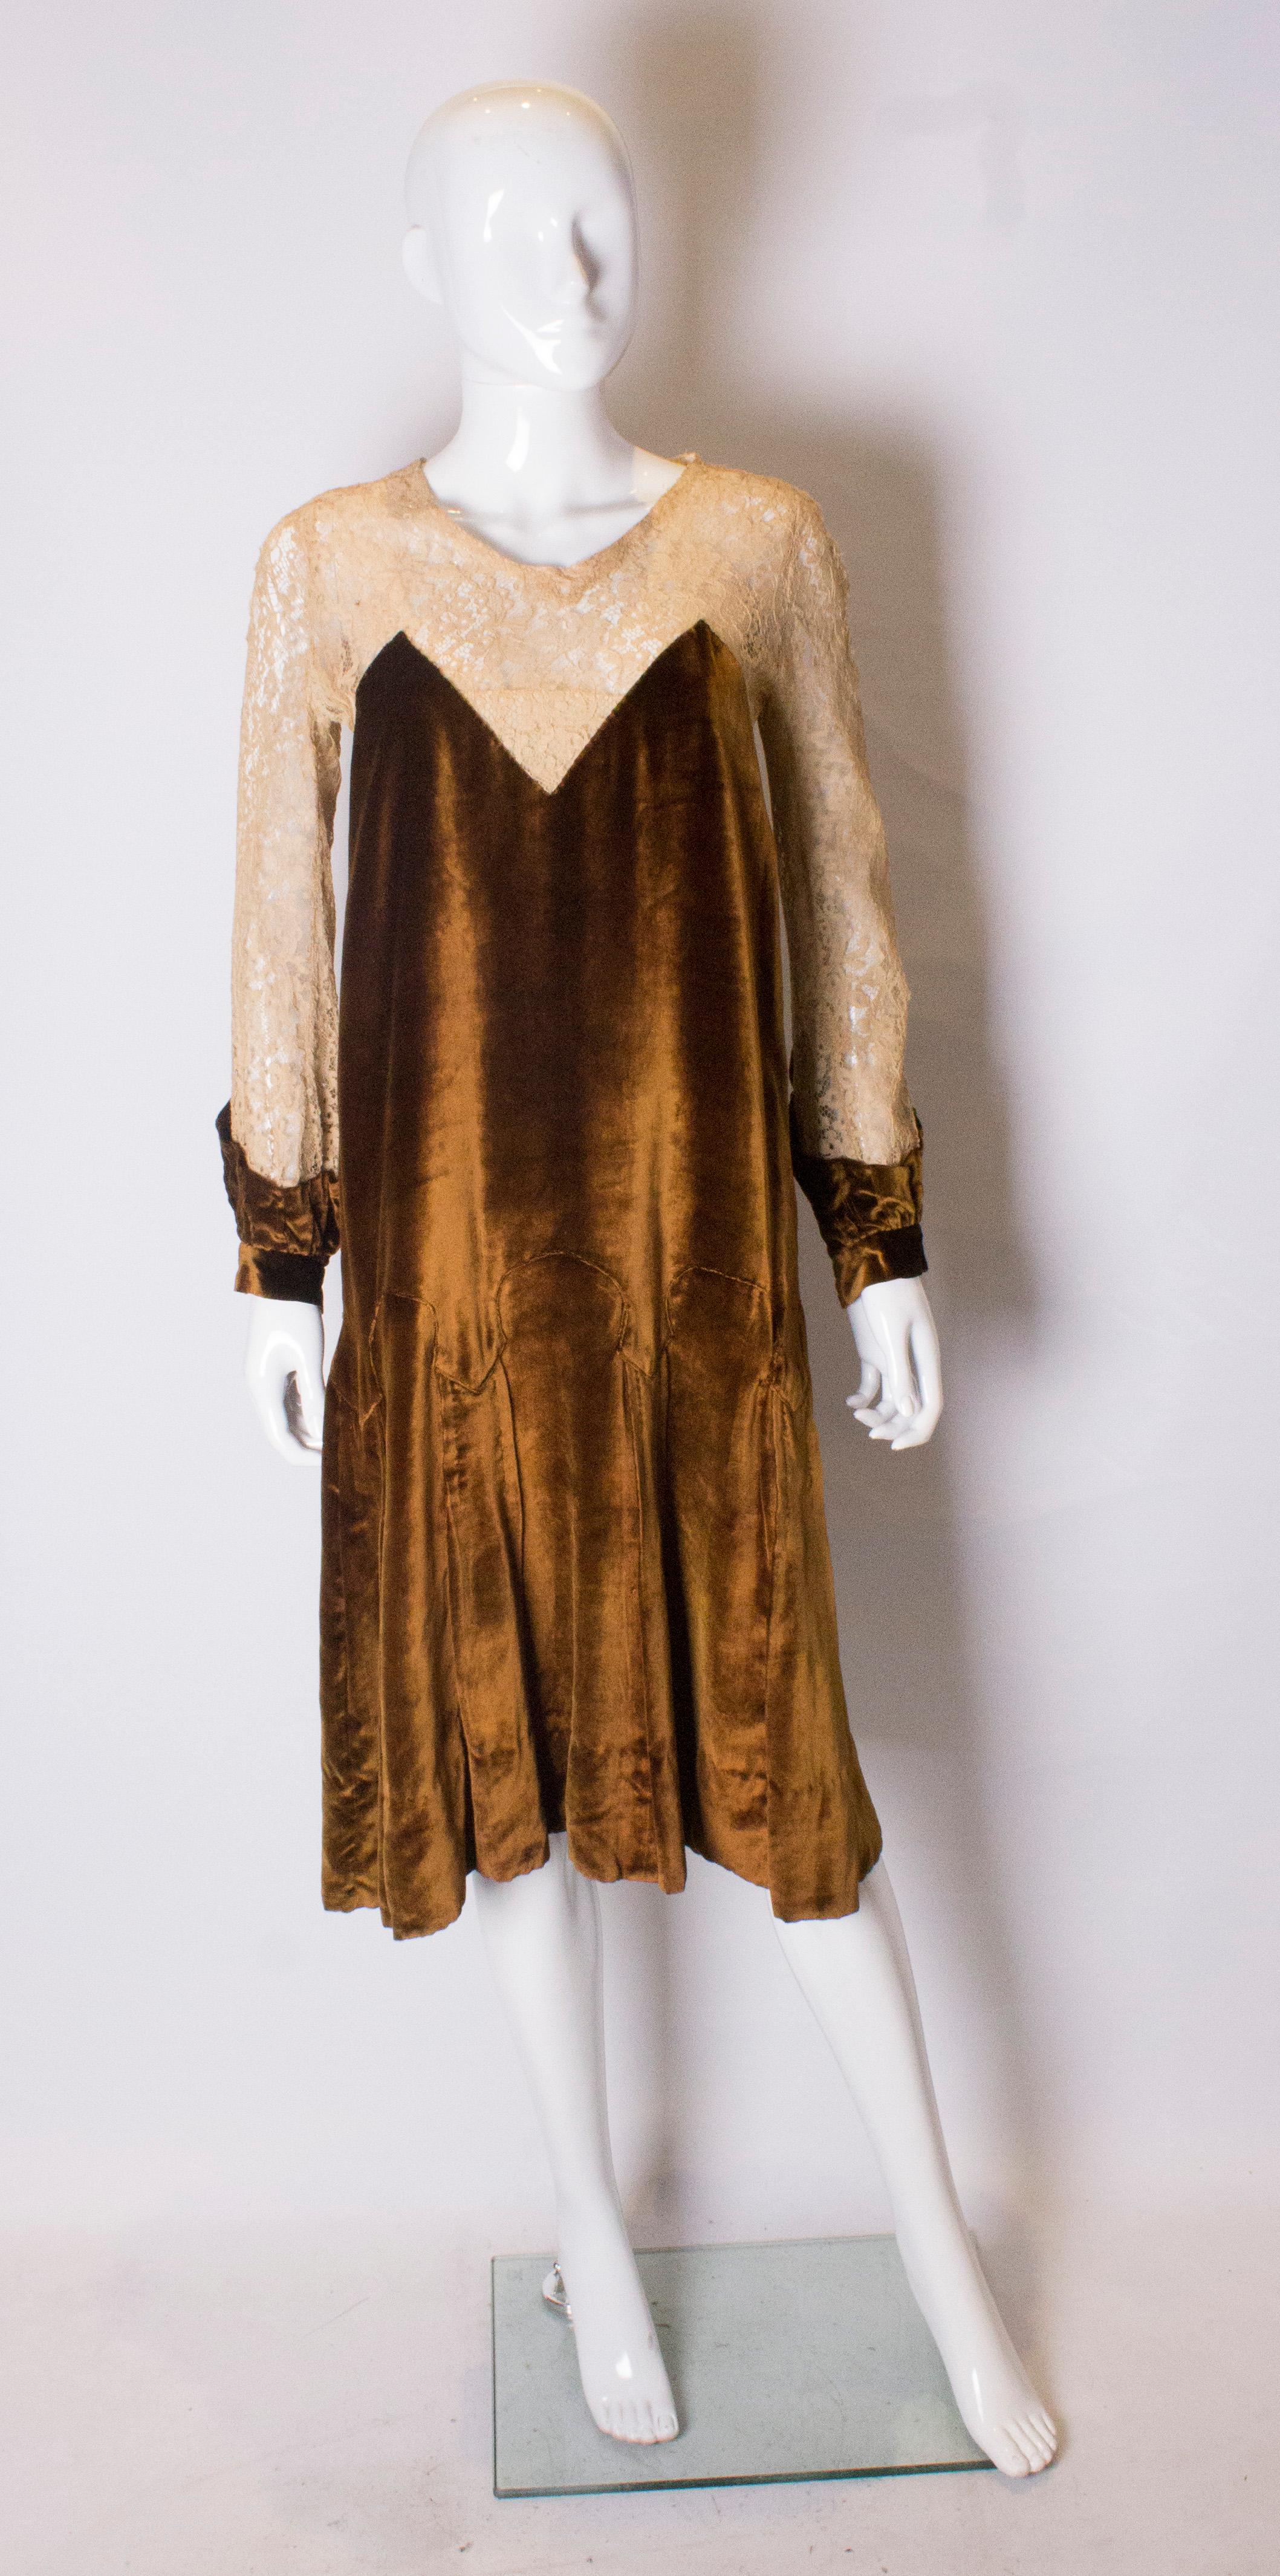 Ein hübsches Kleid aus den 1920er Jahren in einer  rost-/goldfarbener Seidensamt und biskuitfarbene Spitze.  Das Kleid hat eine Knopföffnung am Rücken und ist bis zur Hüfte gefüttert. Die Ärmel und die Passe sind aus Spitze und das Kleid hat eine